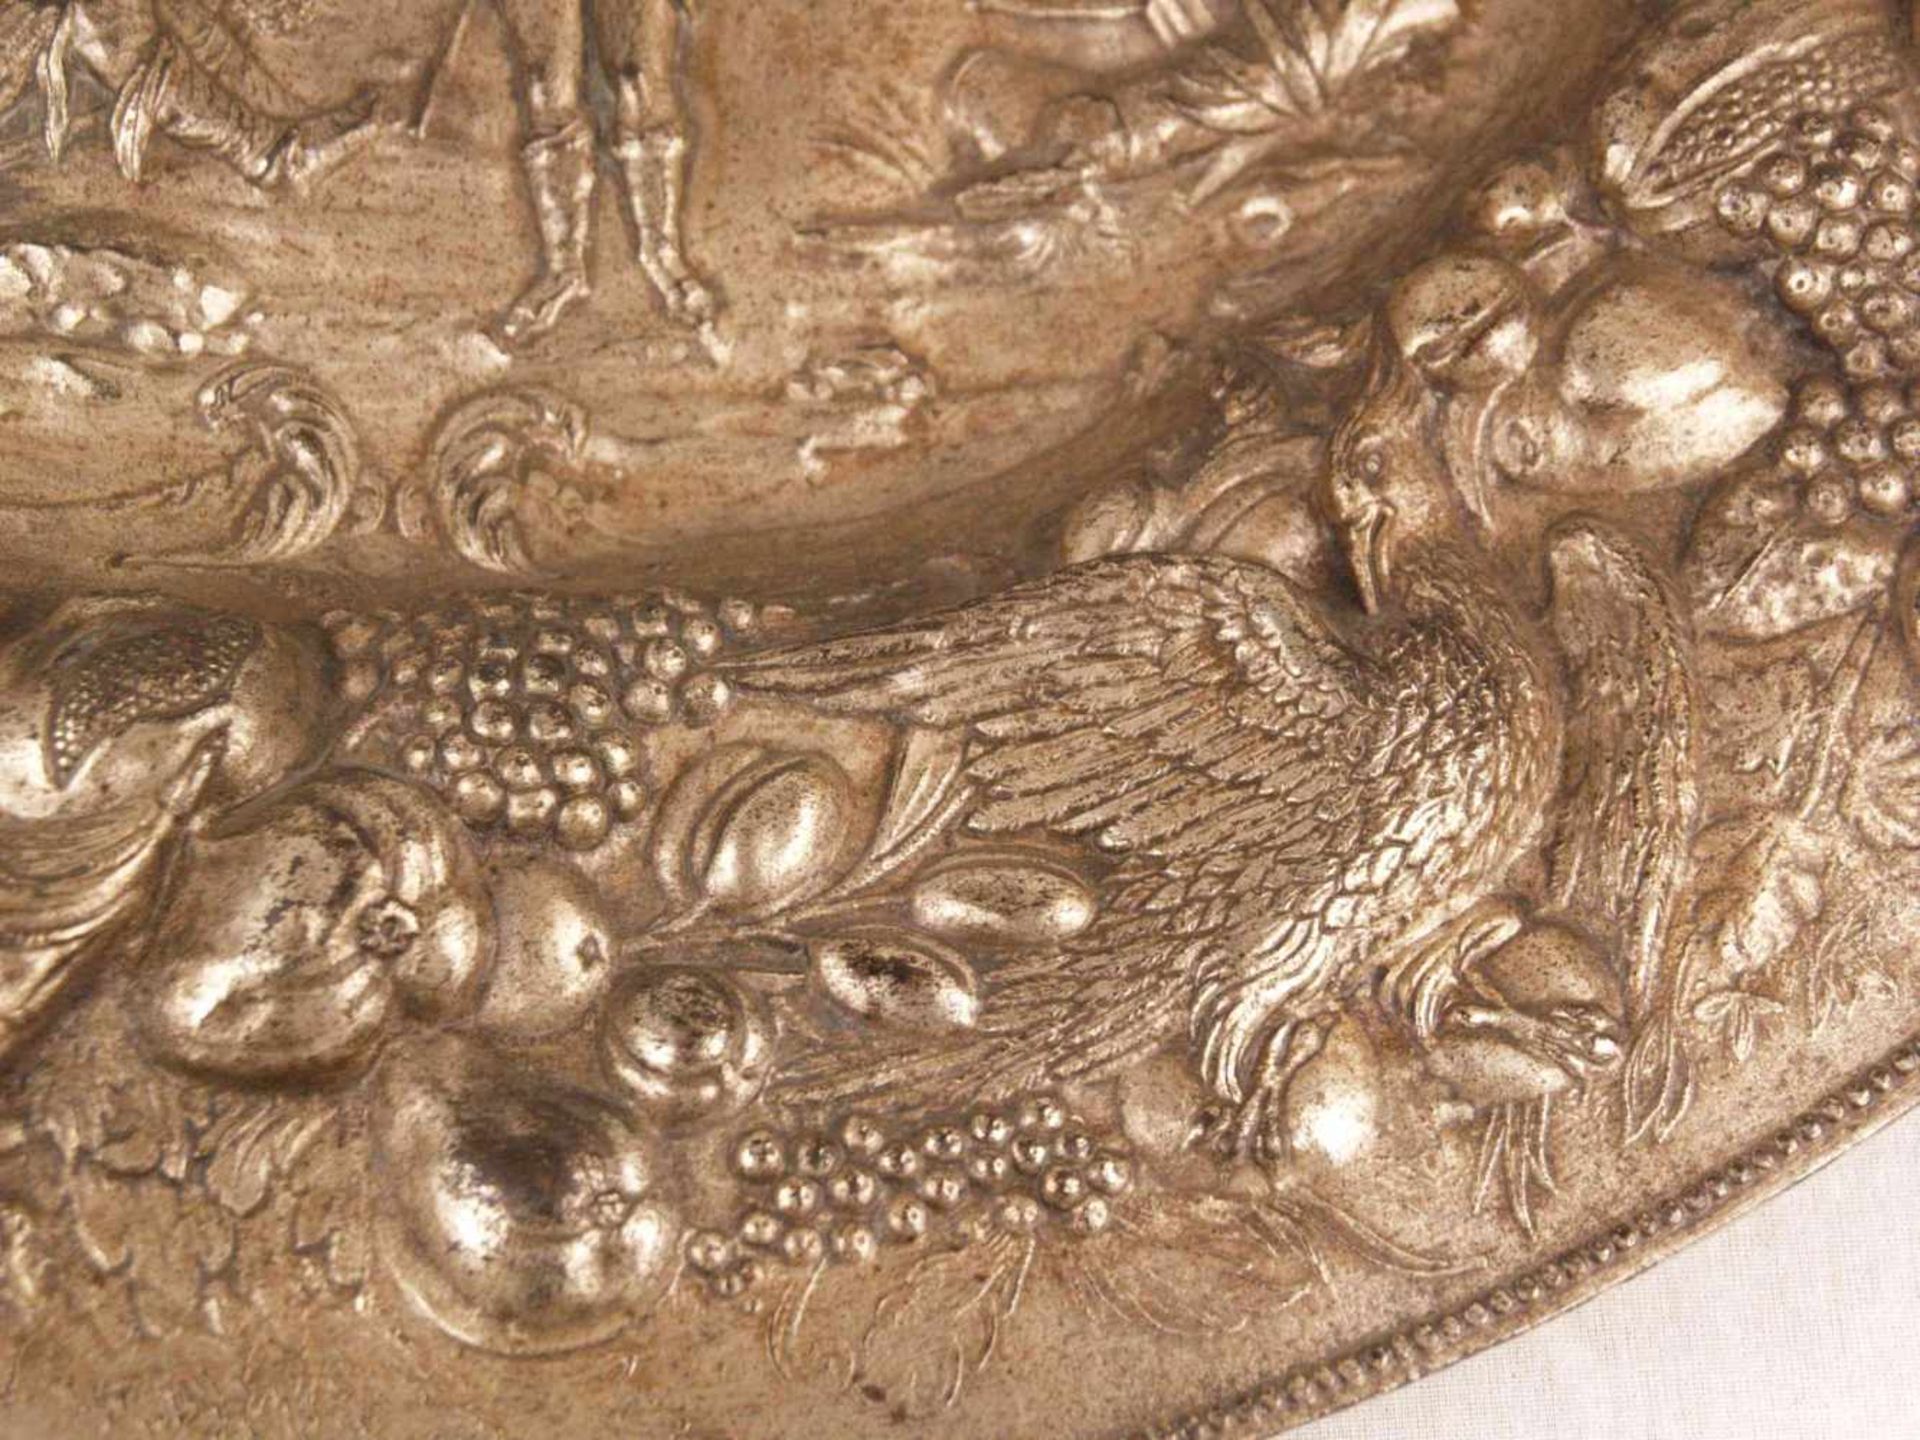 Eisenteller - Wandteller, Eisen, mit üppigem reliefplastischem Dekor, im Spiegel Szene mit drei - Bild 4 aus 5